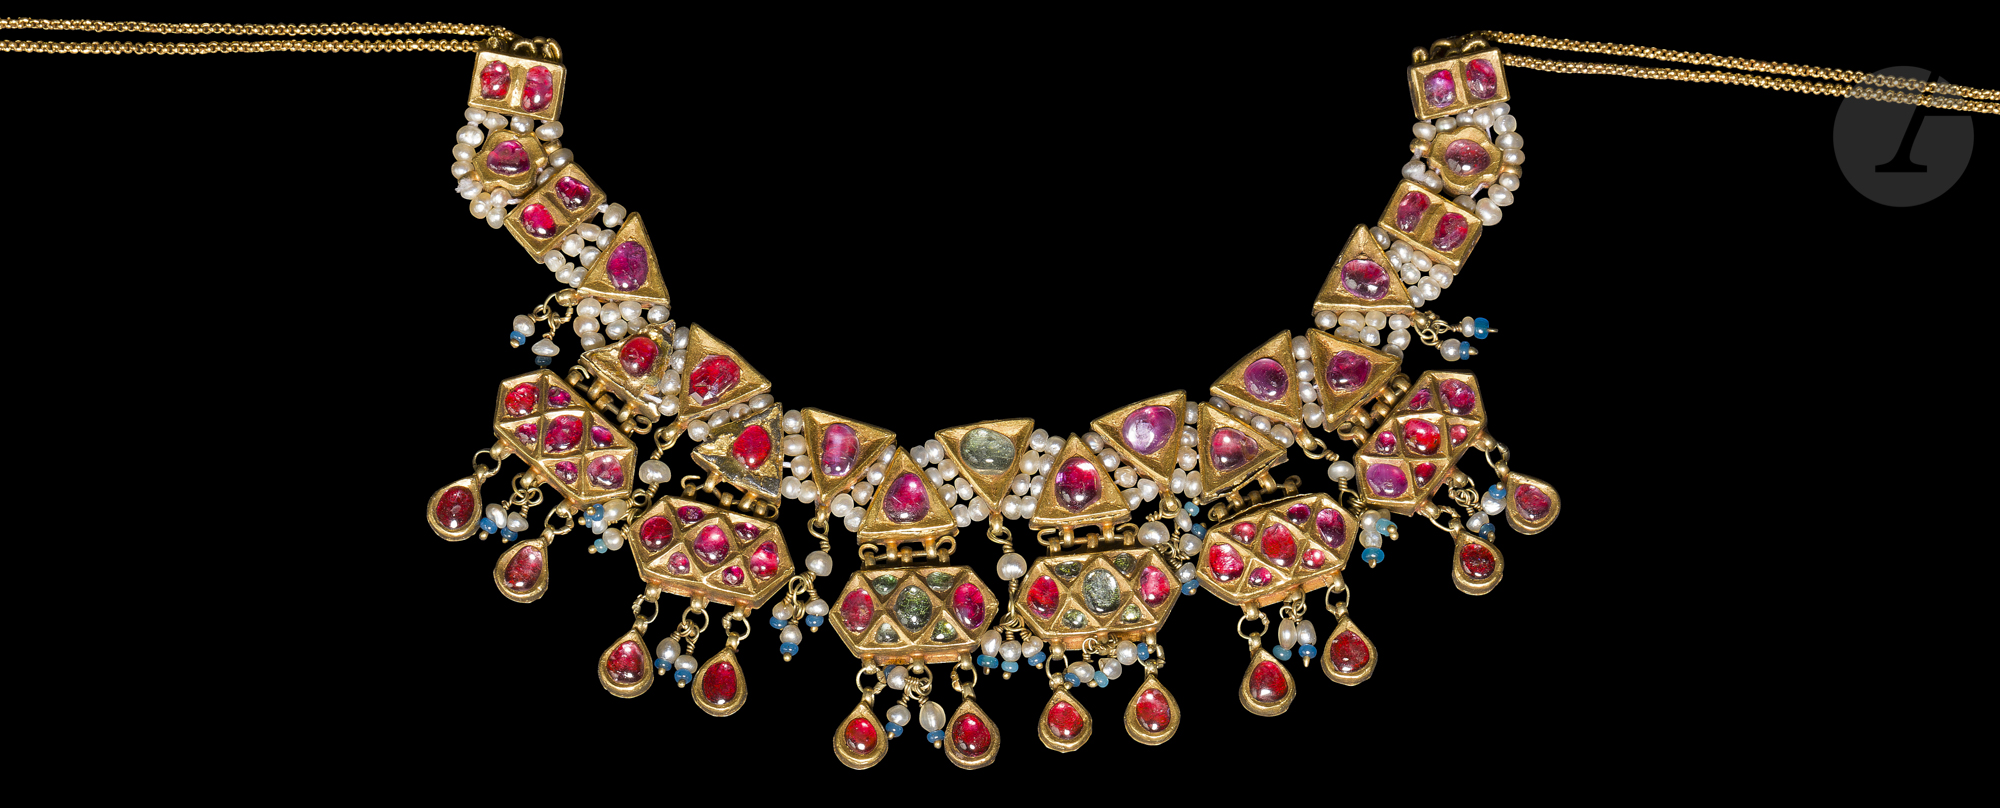 Collier en or rehaussé de pierres précieuses et perles, Inde du Nord, XVIIIe siècle Constitué de